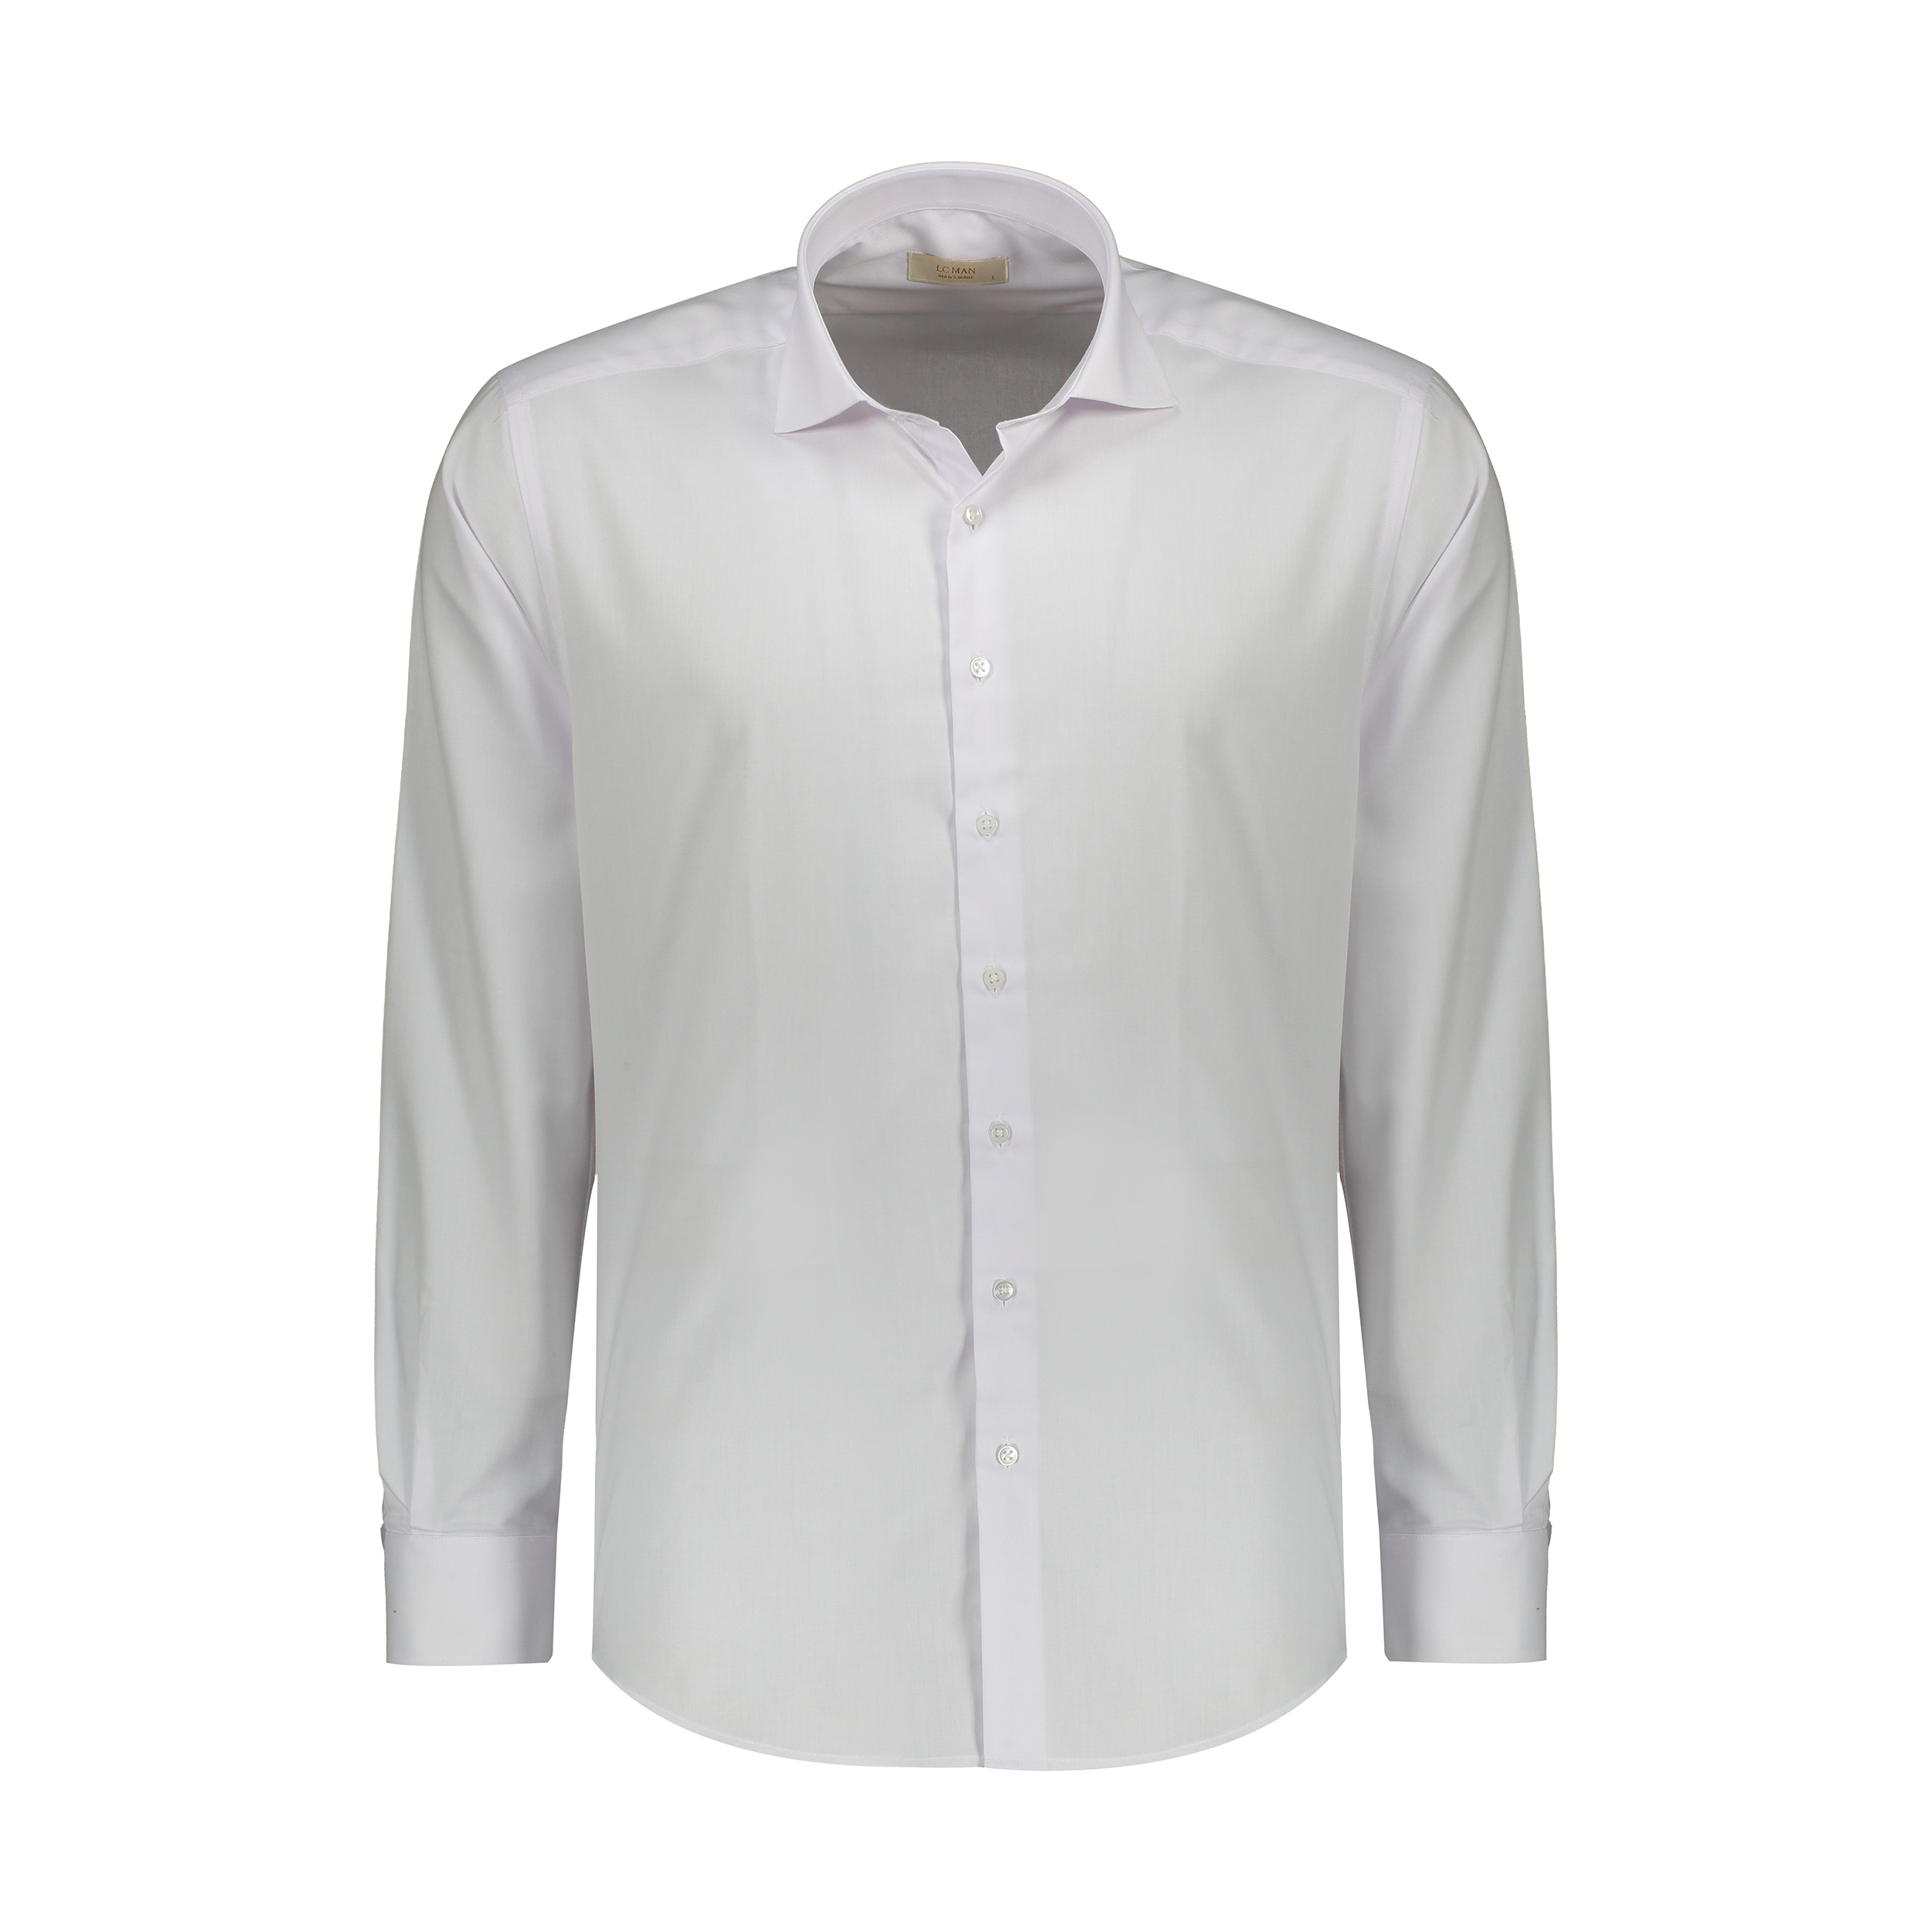 پیراهن مردانه ال سی من مدل 02111185-001 -  - 1